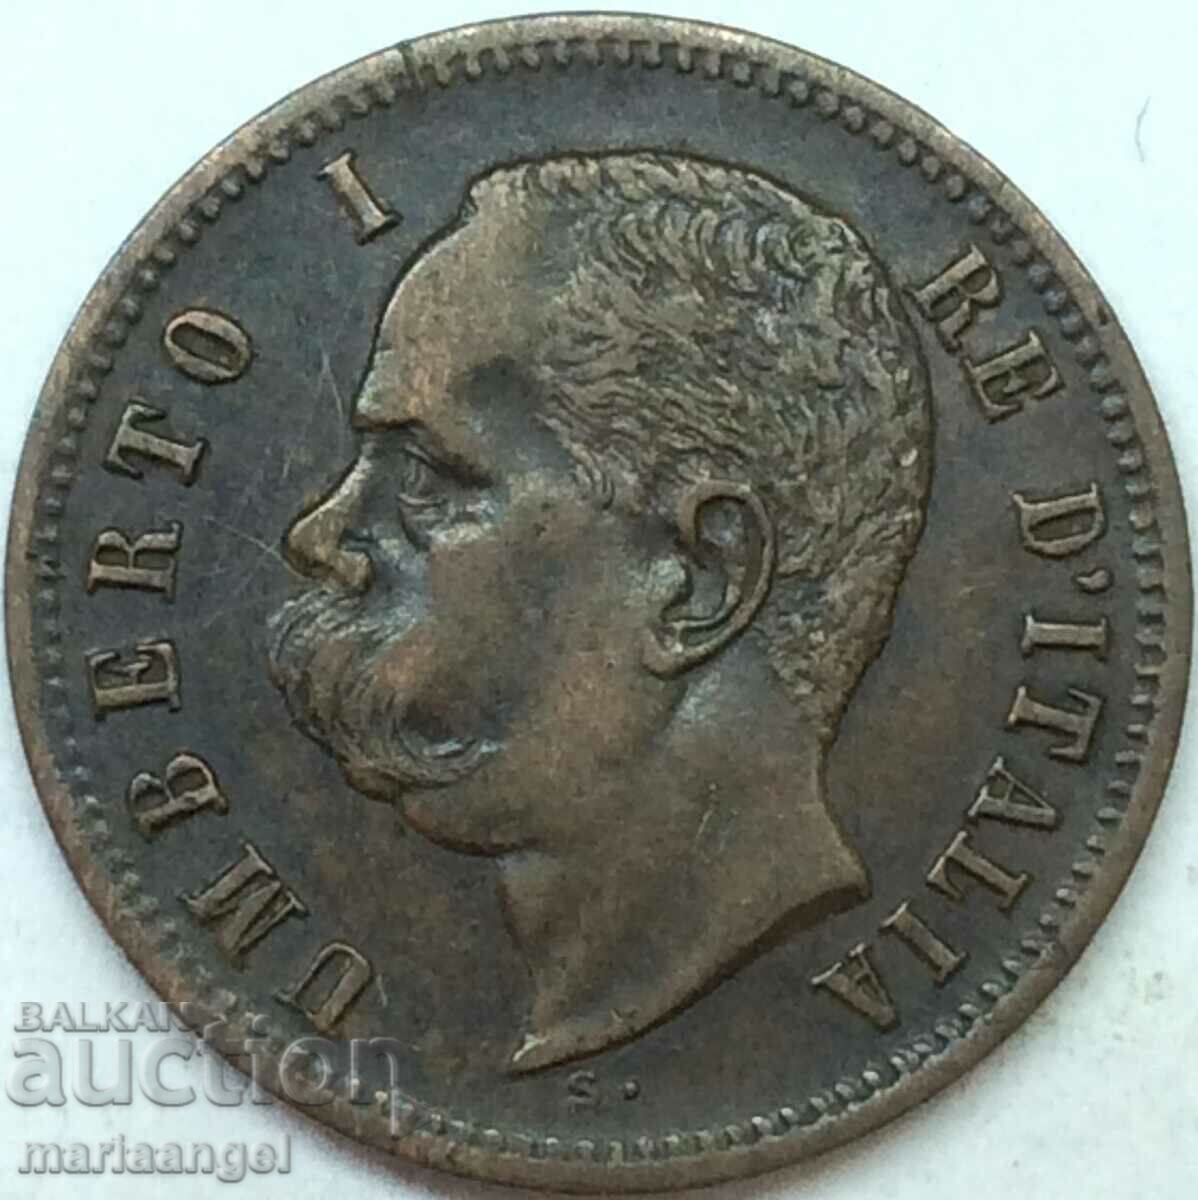 Italy 2 centesimi 1900